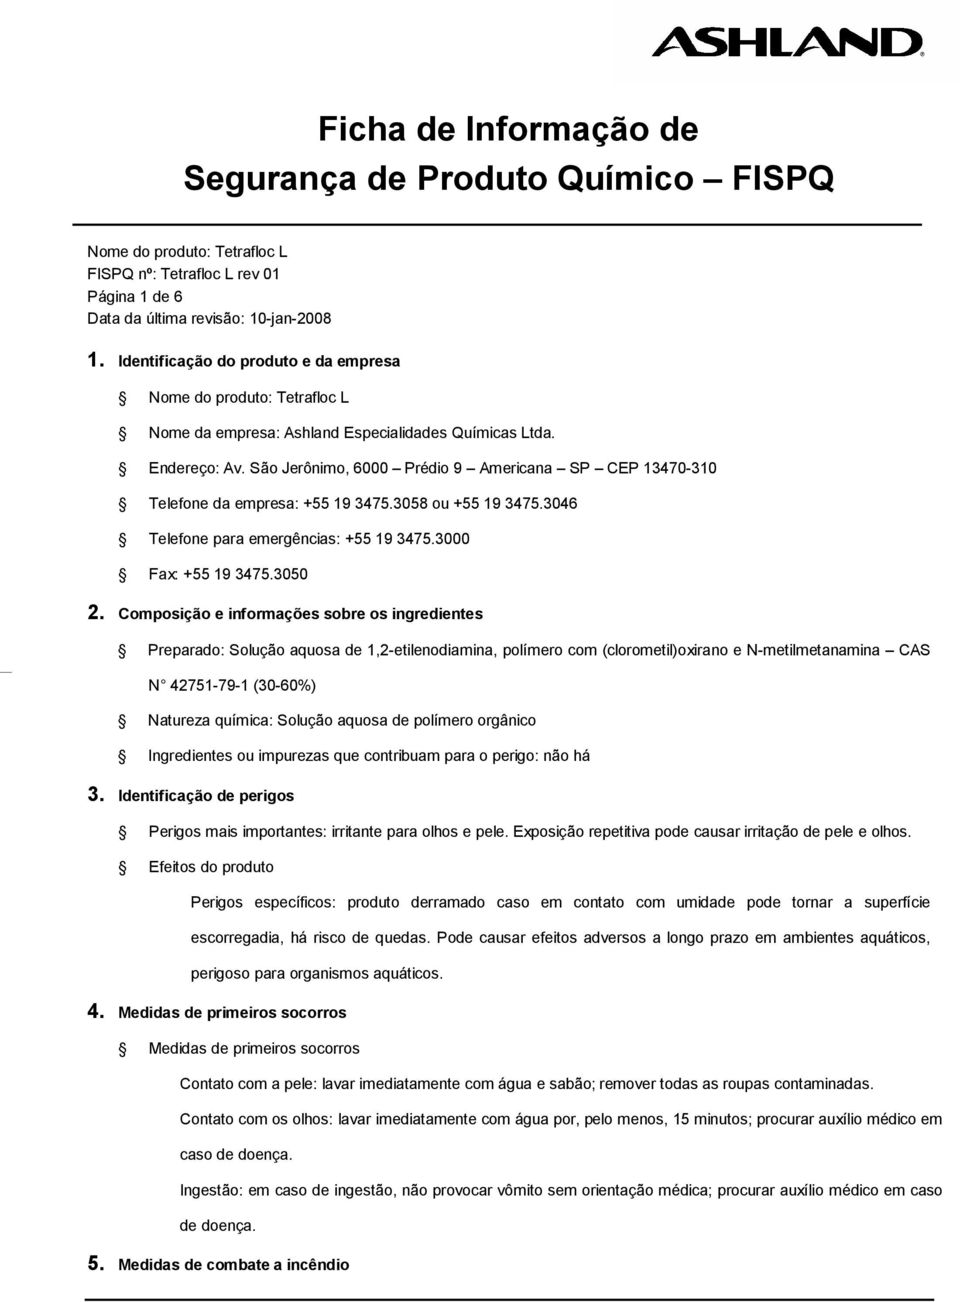 Composição e informações sobre os ingredientes Preparado: Solução aquosa de 1,2-etilenodiamina, polímero com (clorometil)oxirano e N-metilmetanamina CAS N 42751-79-1 (30-60%) Natureza química: